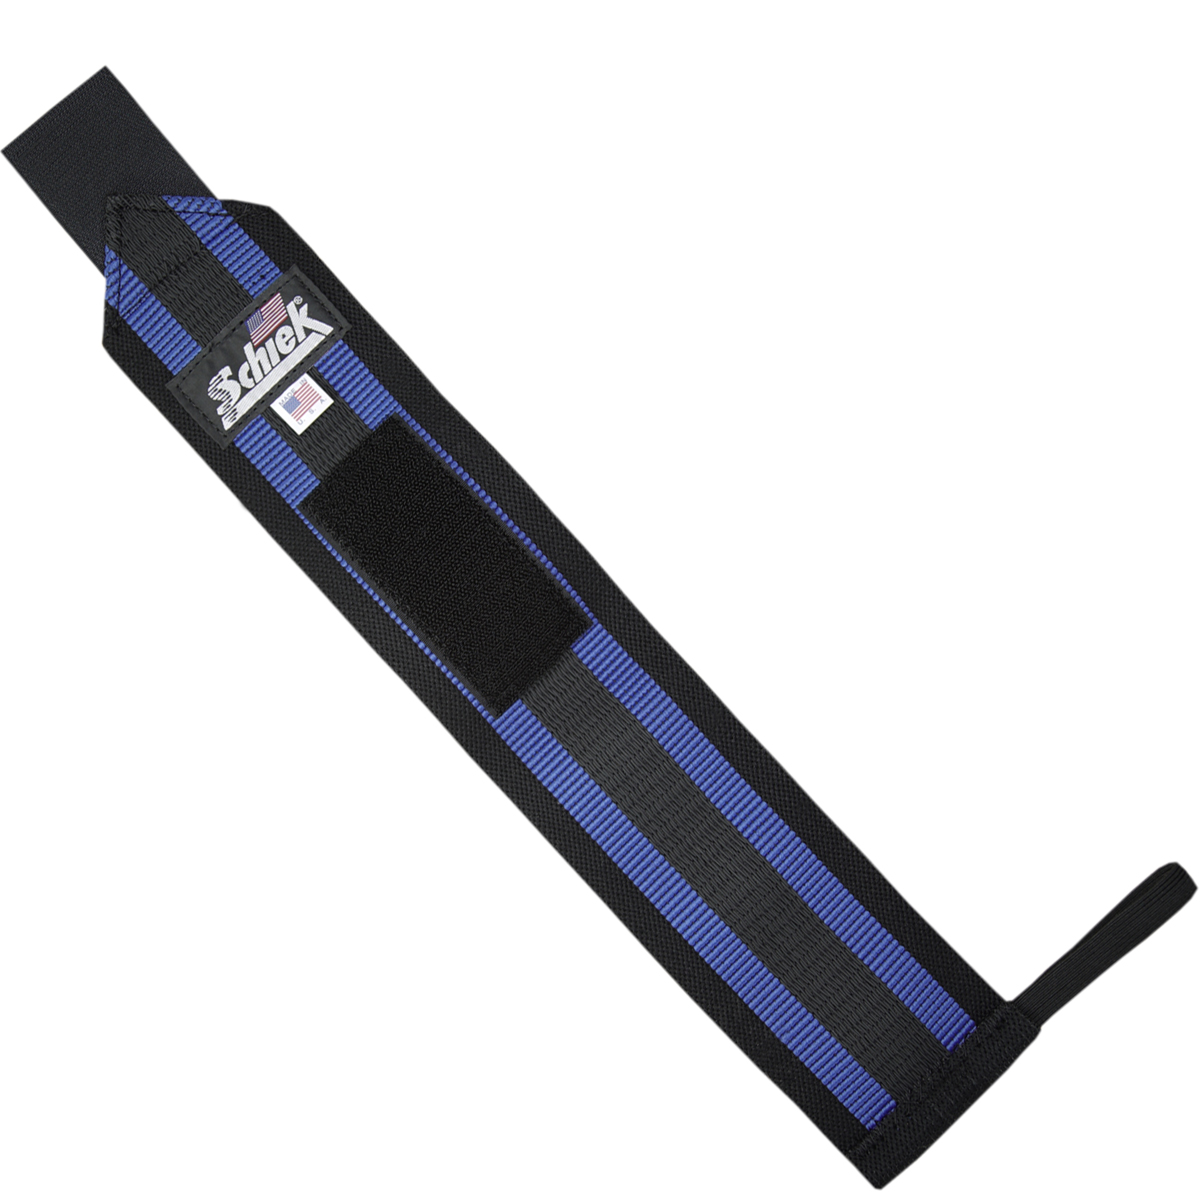 Schiek Sports Blue Line Heavy-Duty Reinforced Wrist Wraps - 18" - Black/Blue - image 3 of 3